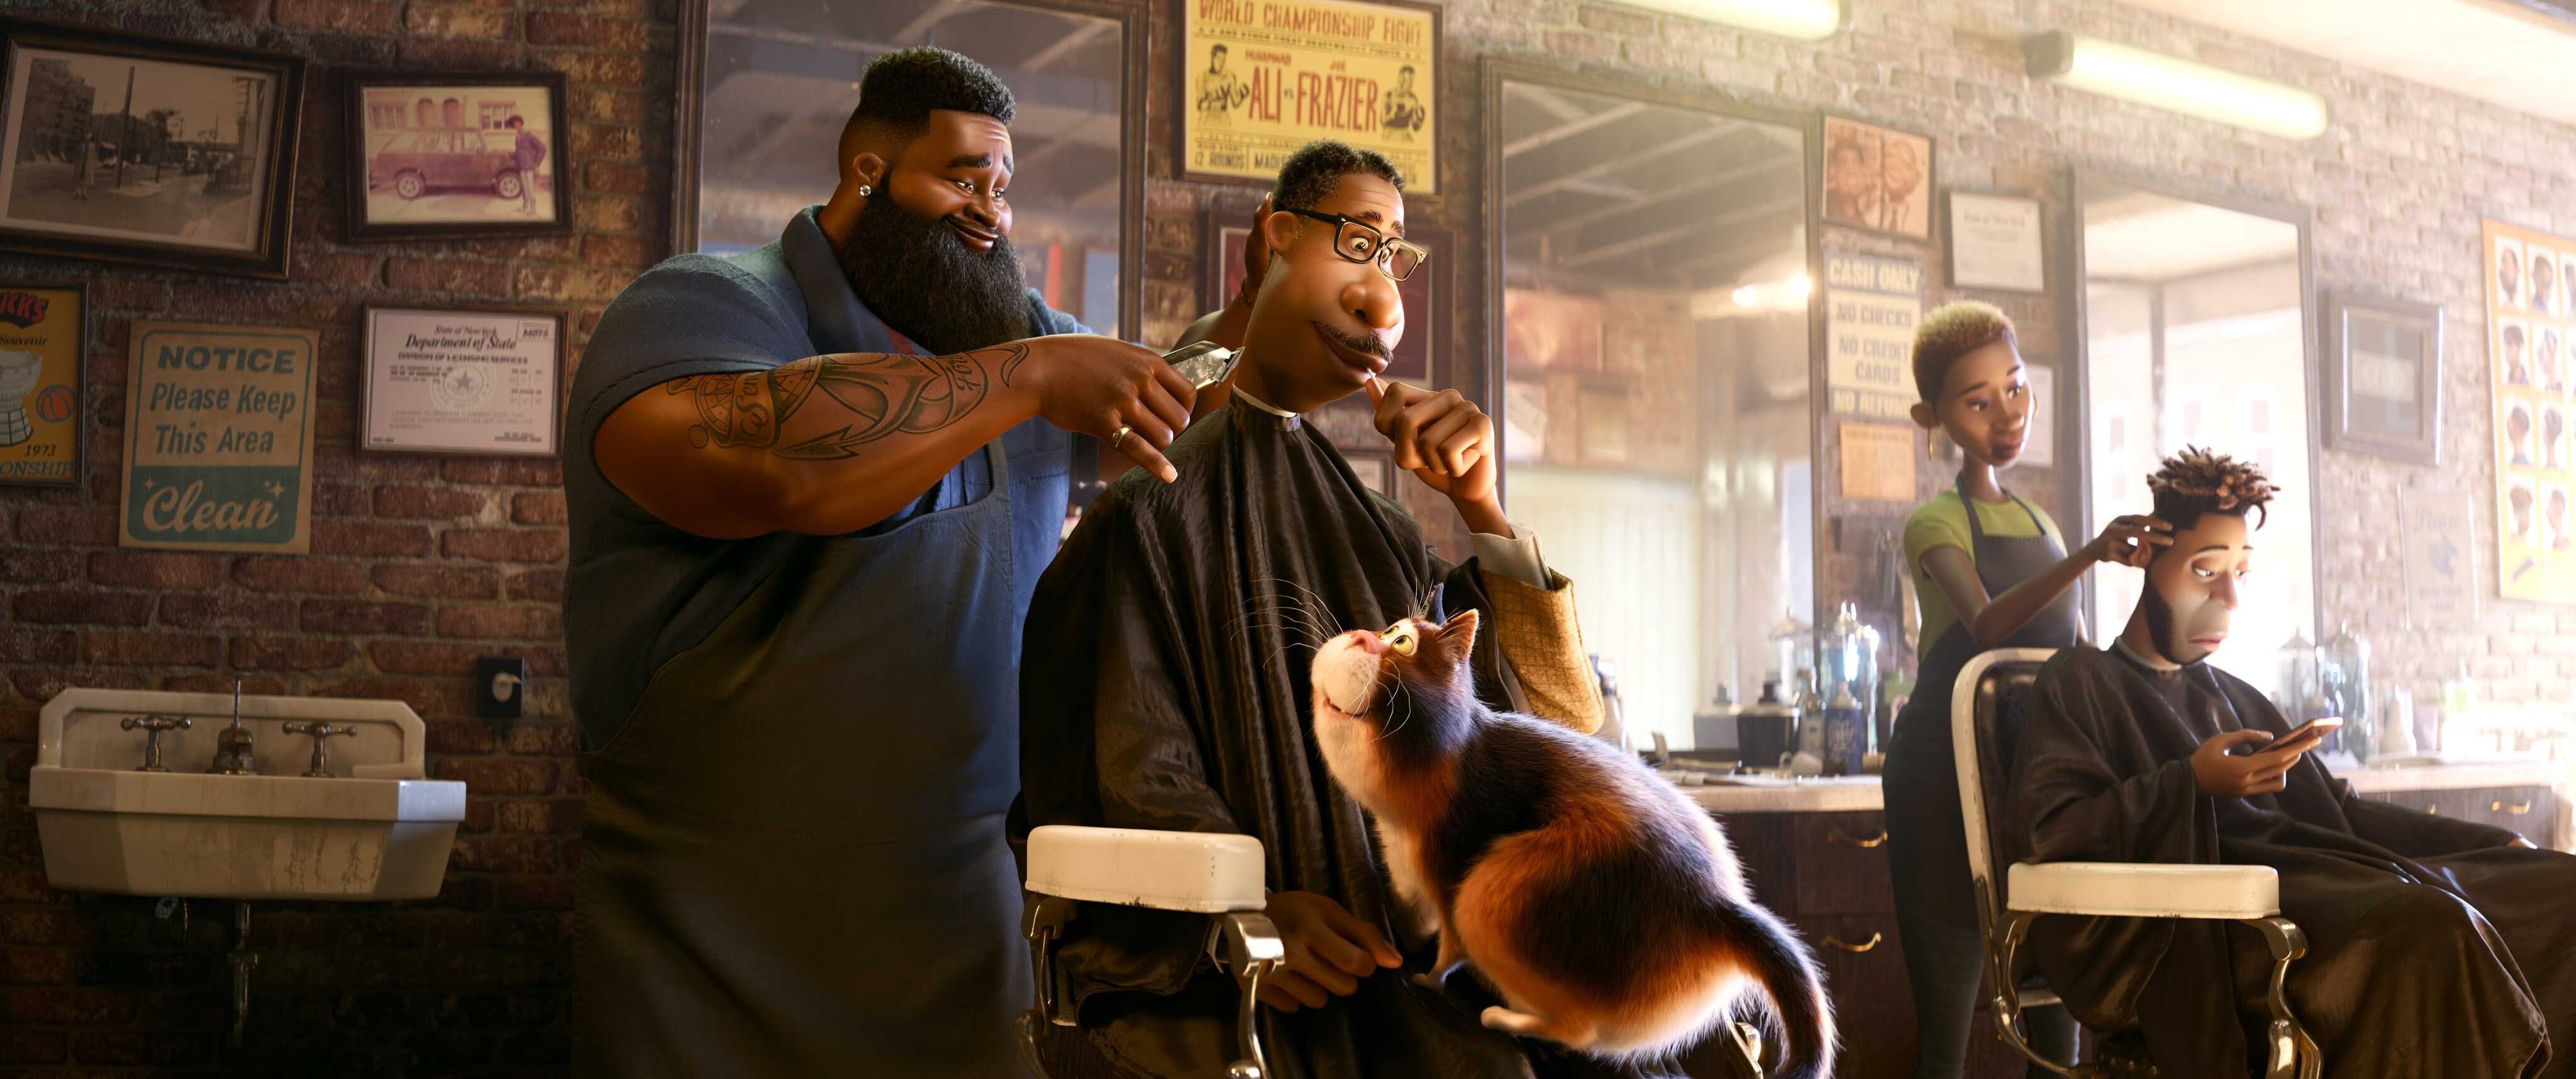 barbershop scene in pixar's soul